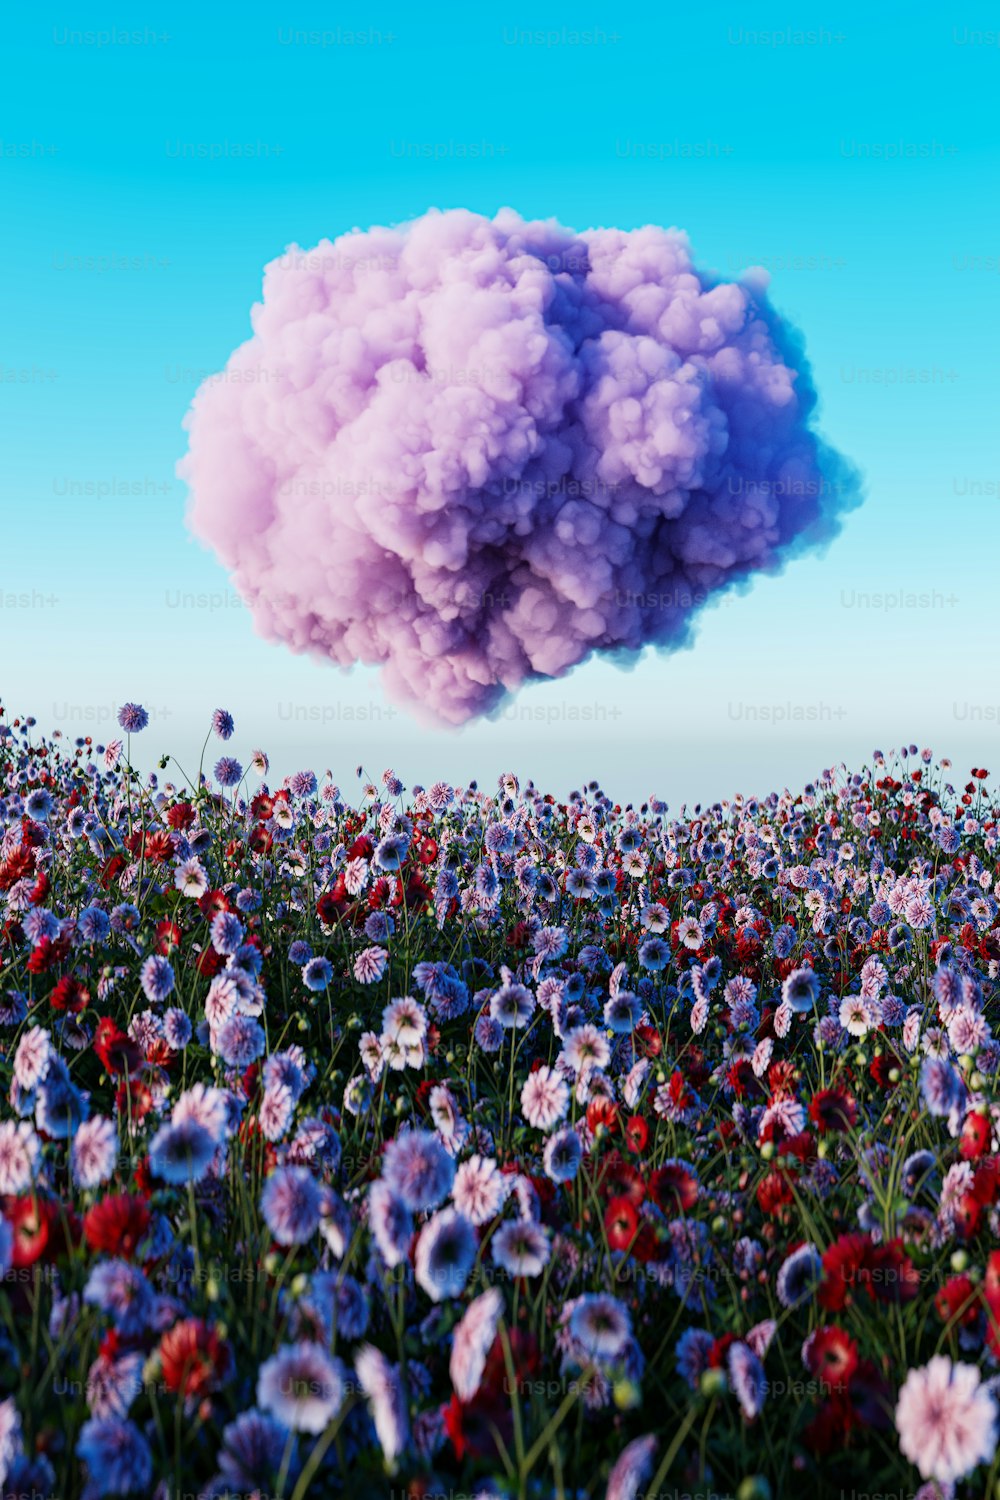 Una nuvola di fumo fluttua su un campo di fiori